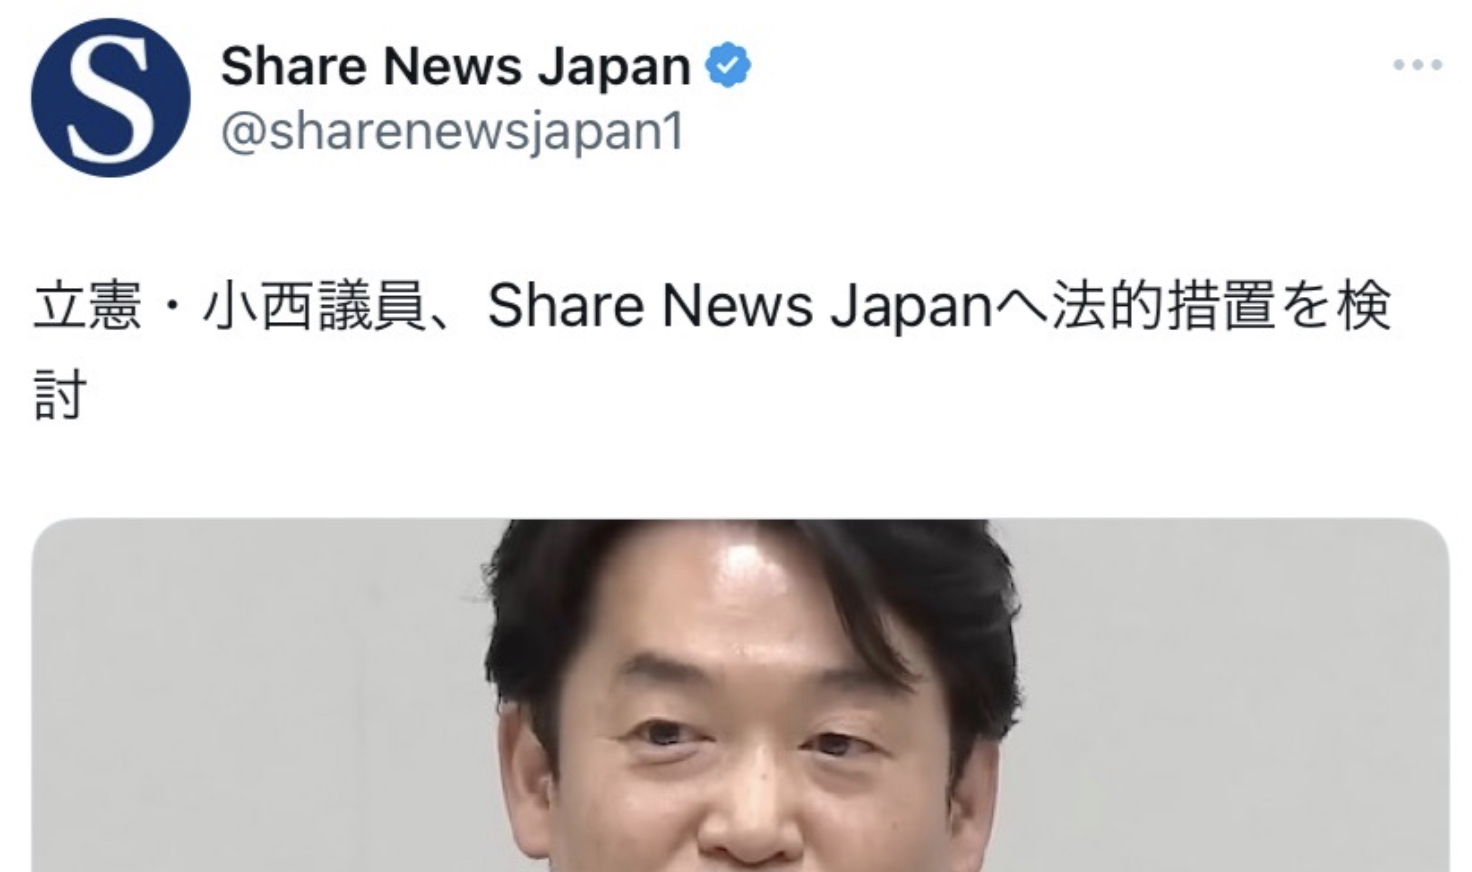 トゥーンベリ・ゴンさん『Share News Japan、他人事みたいに書いてるけど自分の事で草』